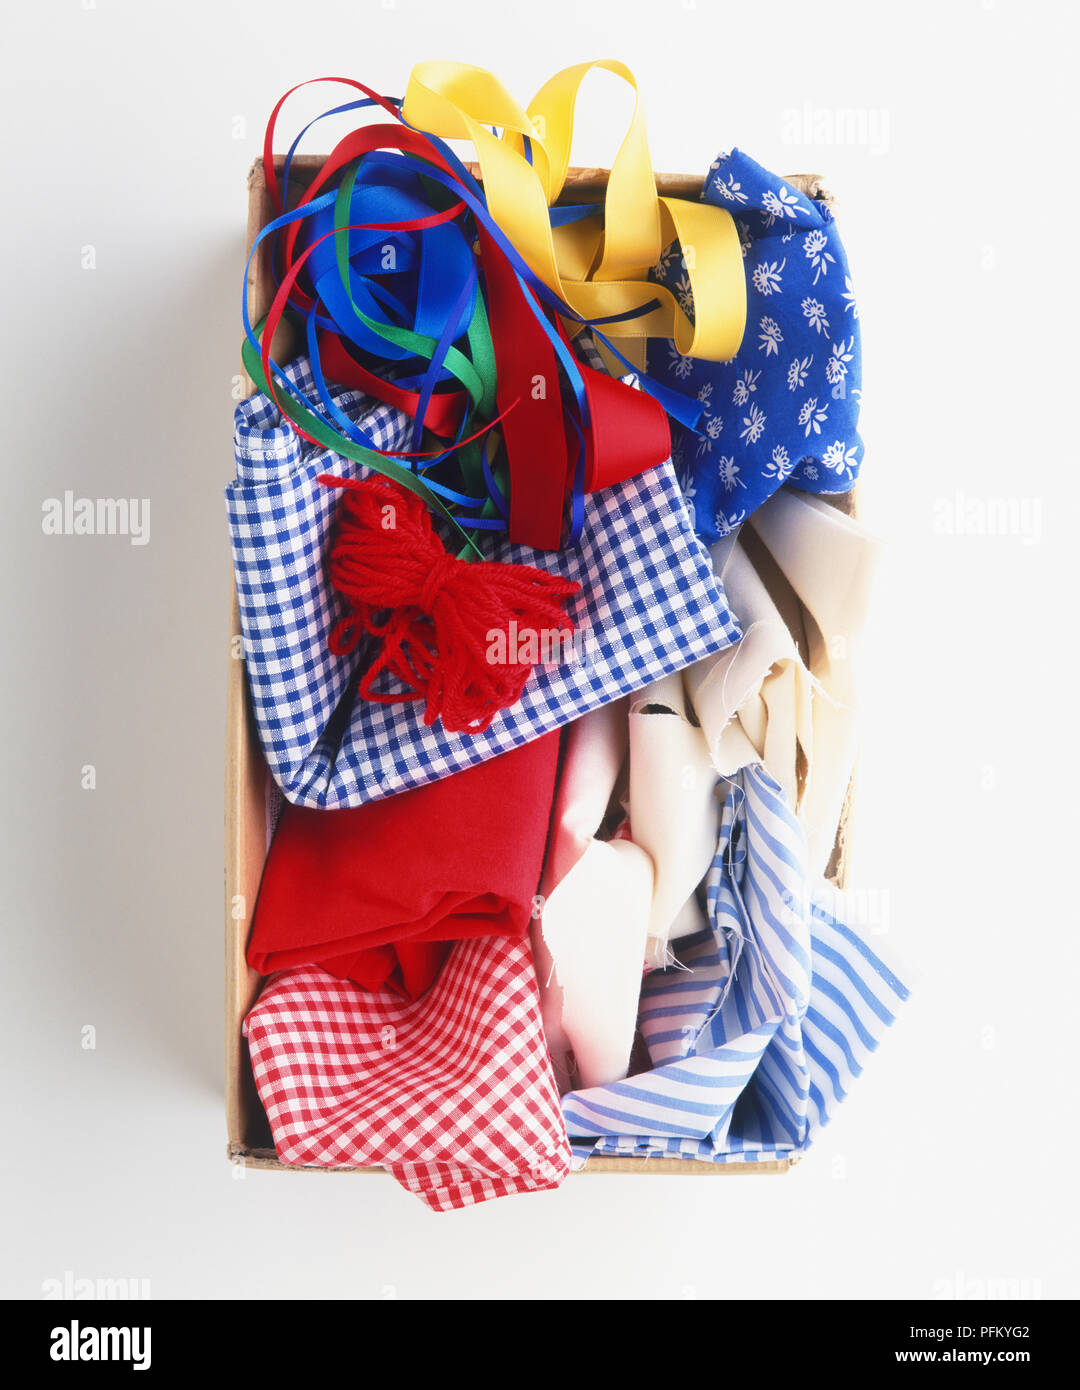 Schuhkarton mit Ersatzteile Bits von farbigen Garnen, bunten Bänder, Reste von Plain und gemusterten Stoff, Ansicht von oben Stockfoto